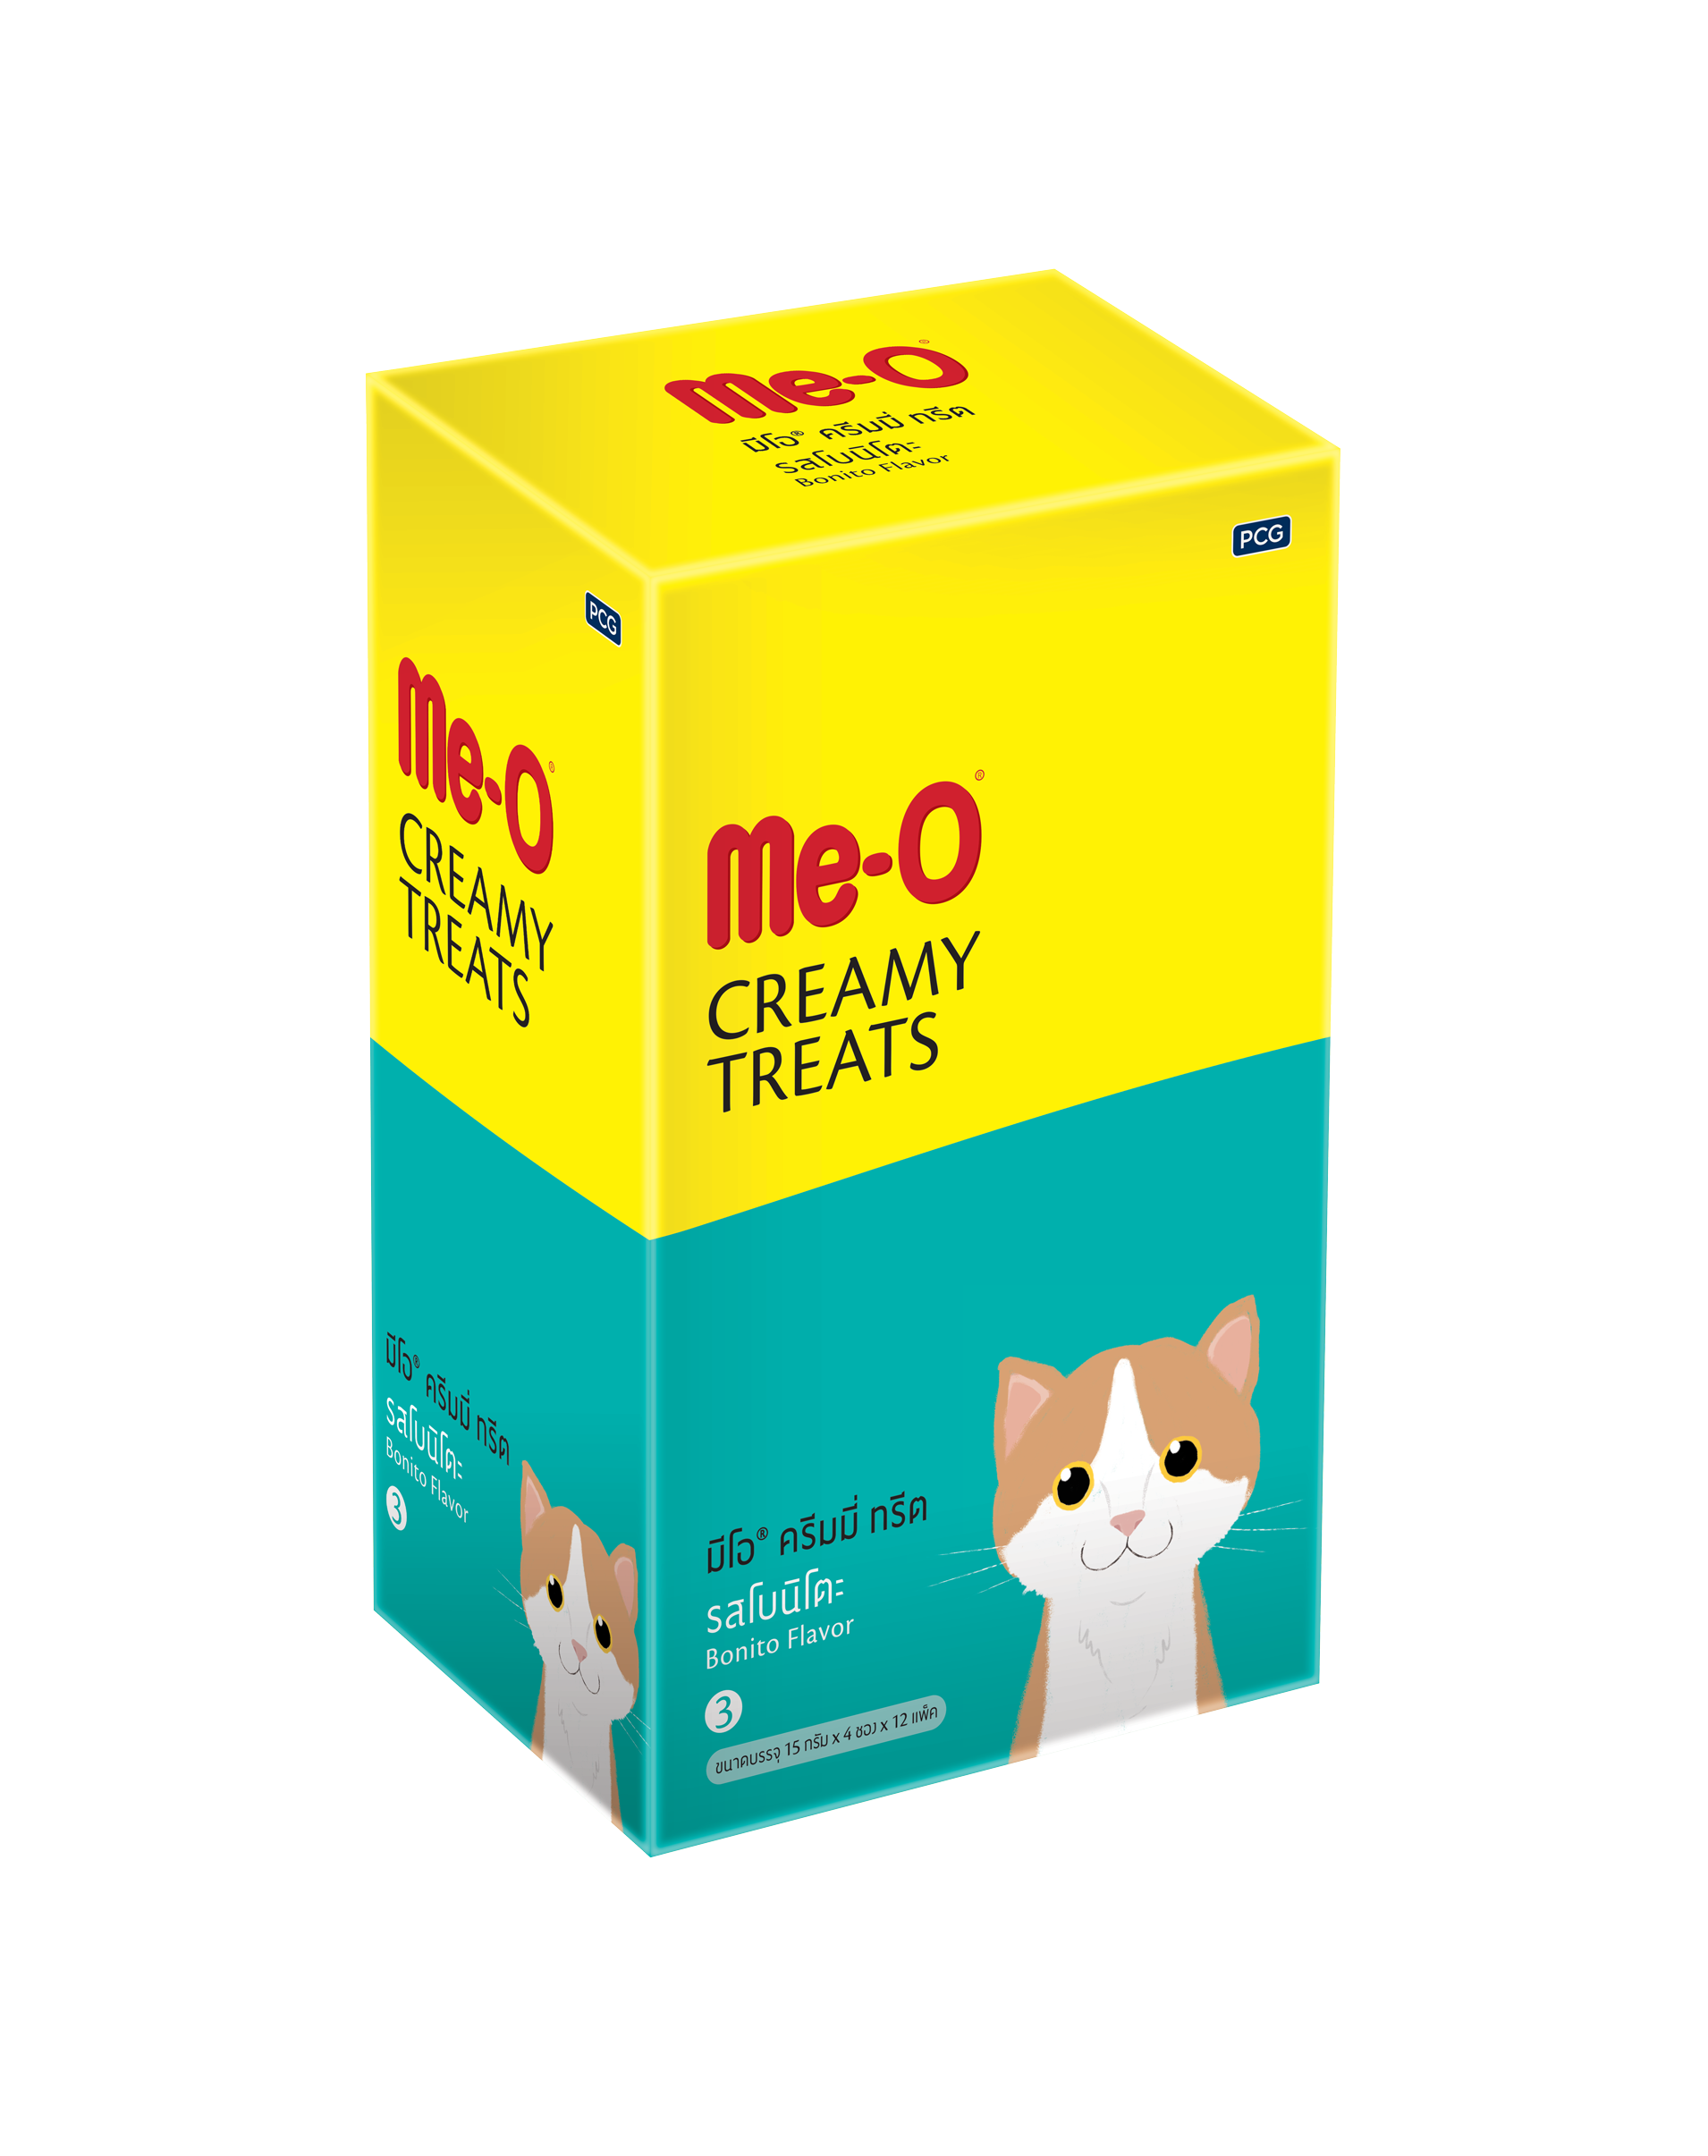 MeO Cat Lick (Creamy Treats) – Bonito Flavour (15g x 4)